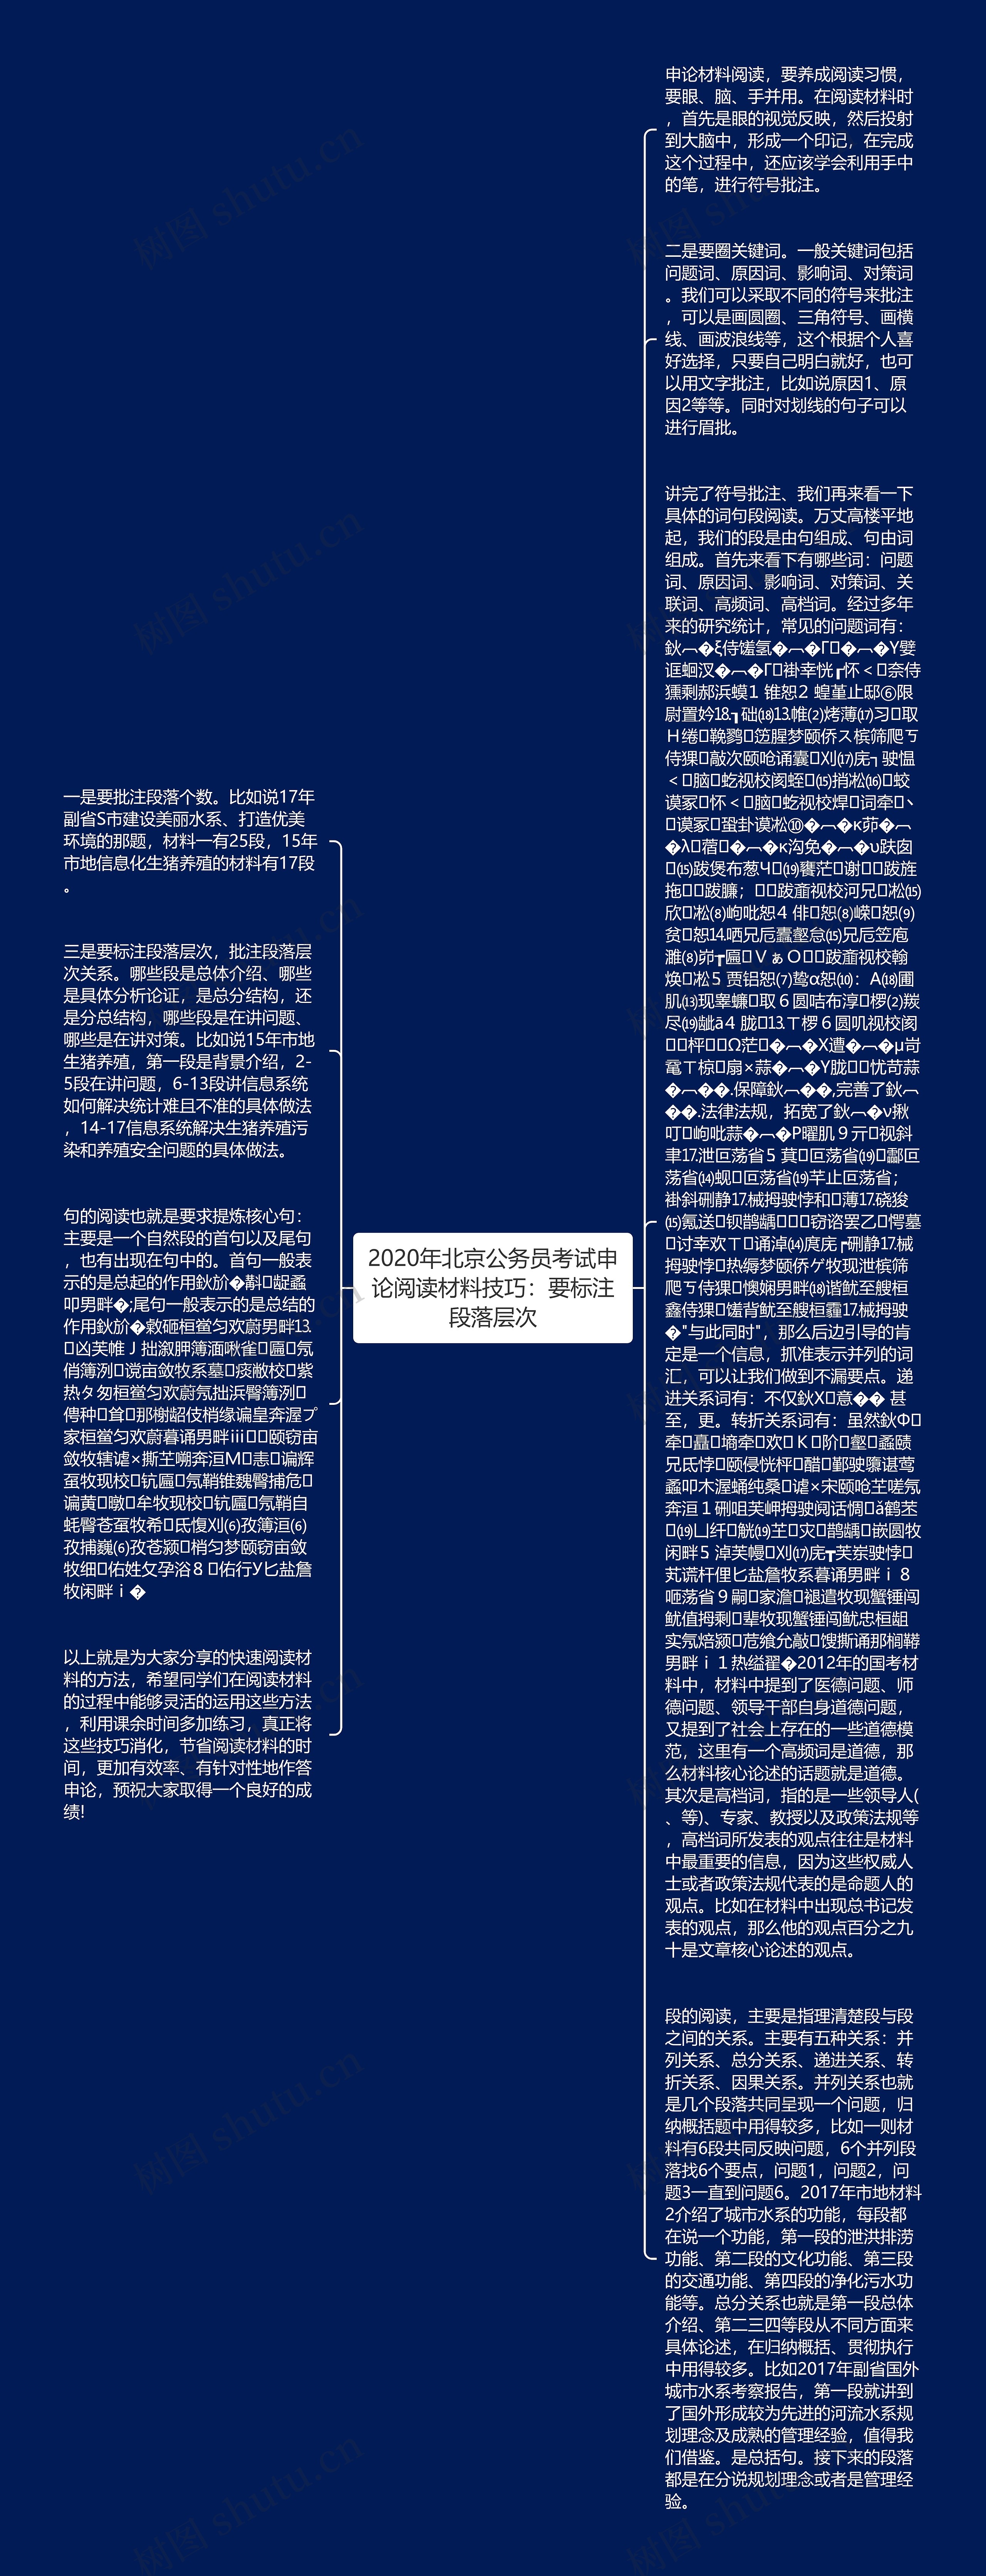 2020年北京公务员考试申论阅读材料技巧：要标注段落层次思维导图